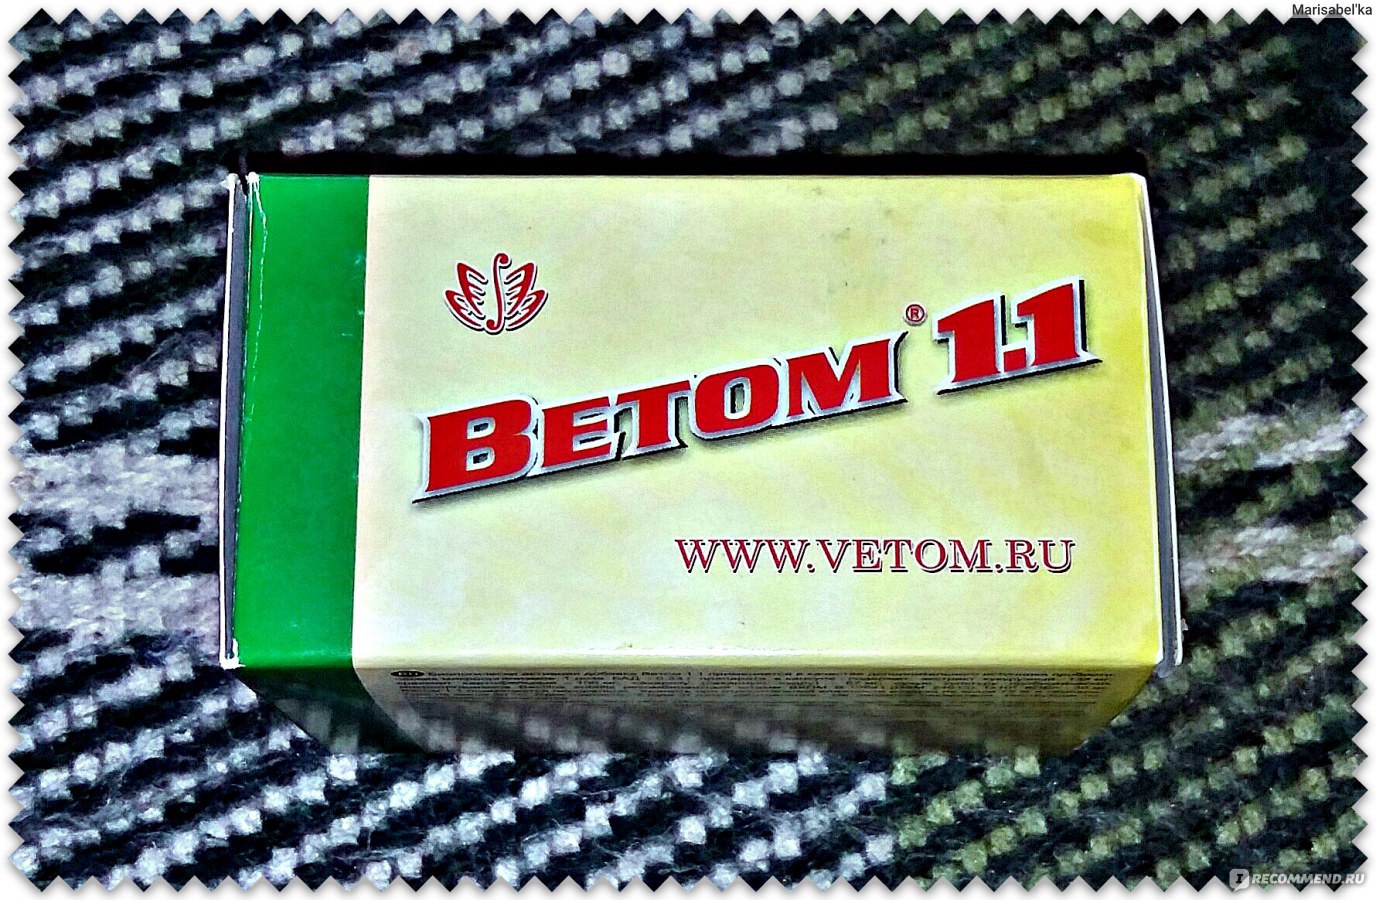 Купить Ветом 1.1 В Новосибирске В Аптеке